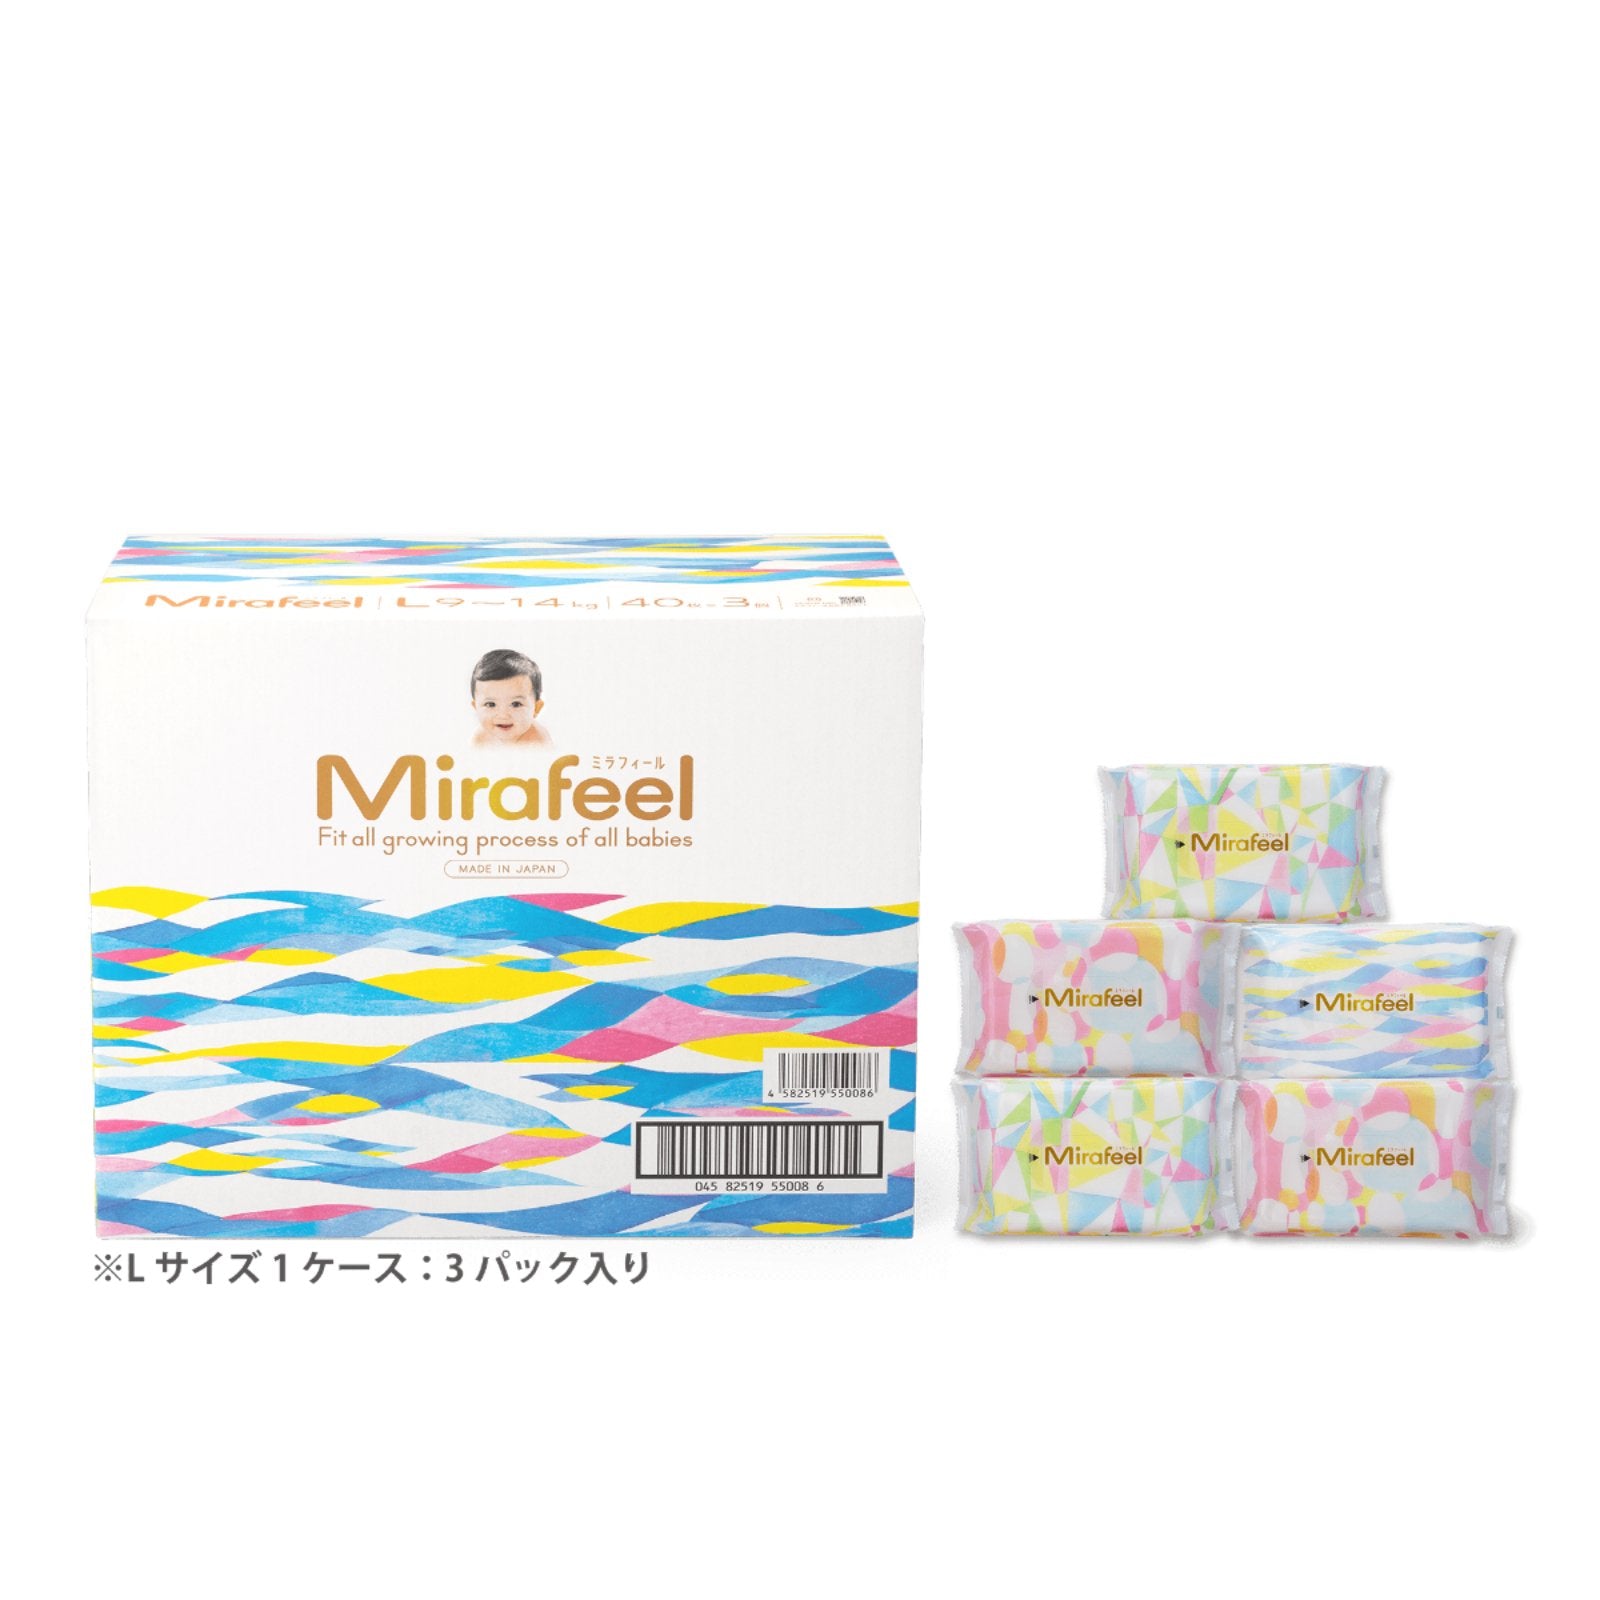 【Cセット】おむつLサイズ1箱+おしりふき5パック - Mirafeel